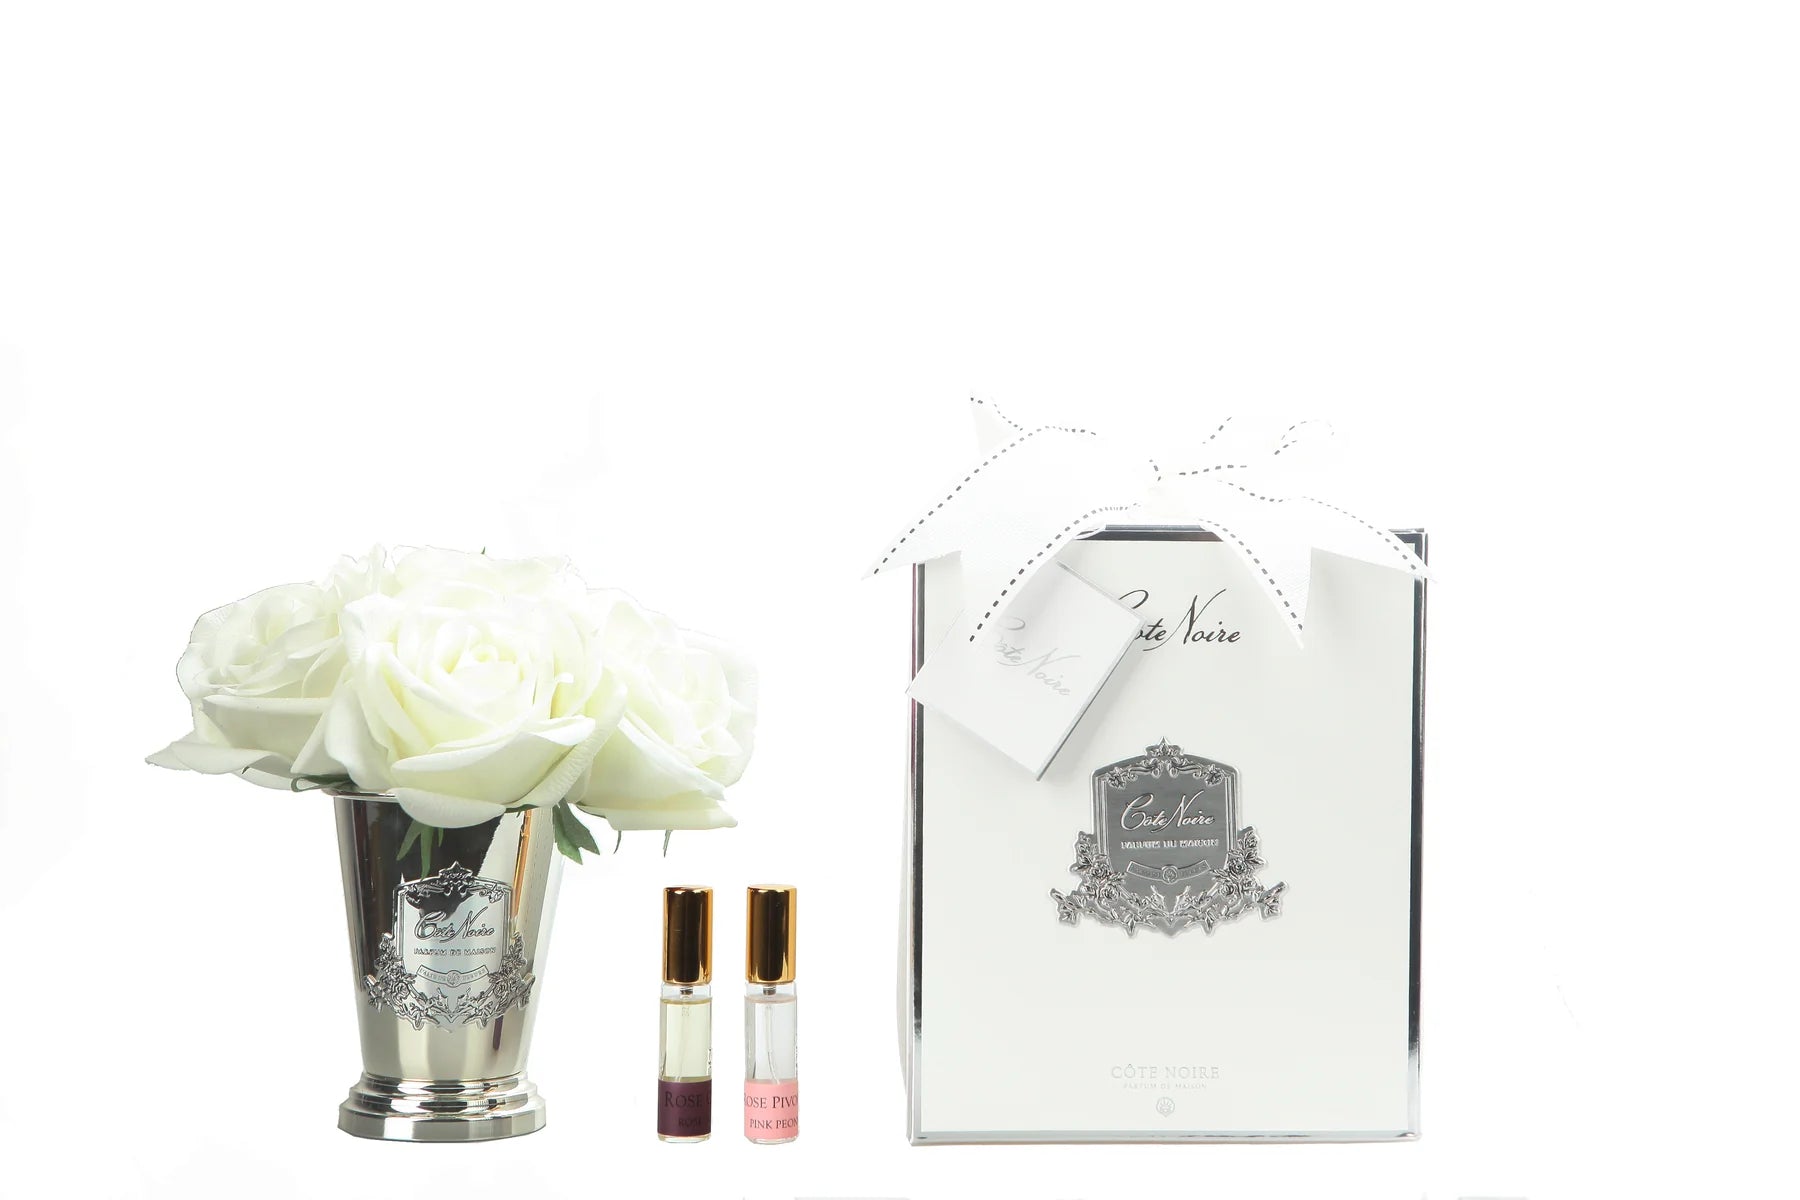 sieben weisse rosen in silbernem kelch mit inschrift. dazu zwei parfumsprays und weisse geschenkbox mit schleife.